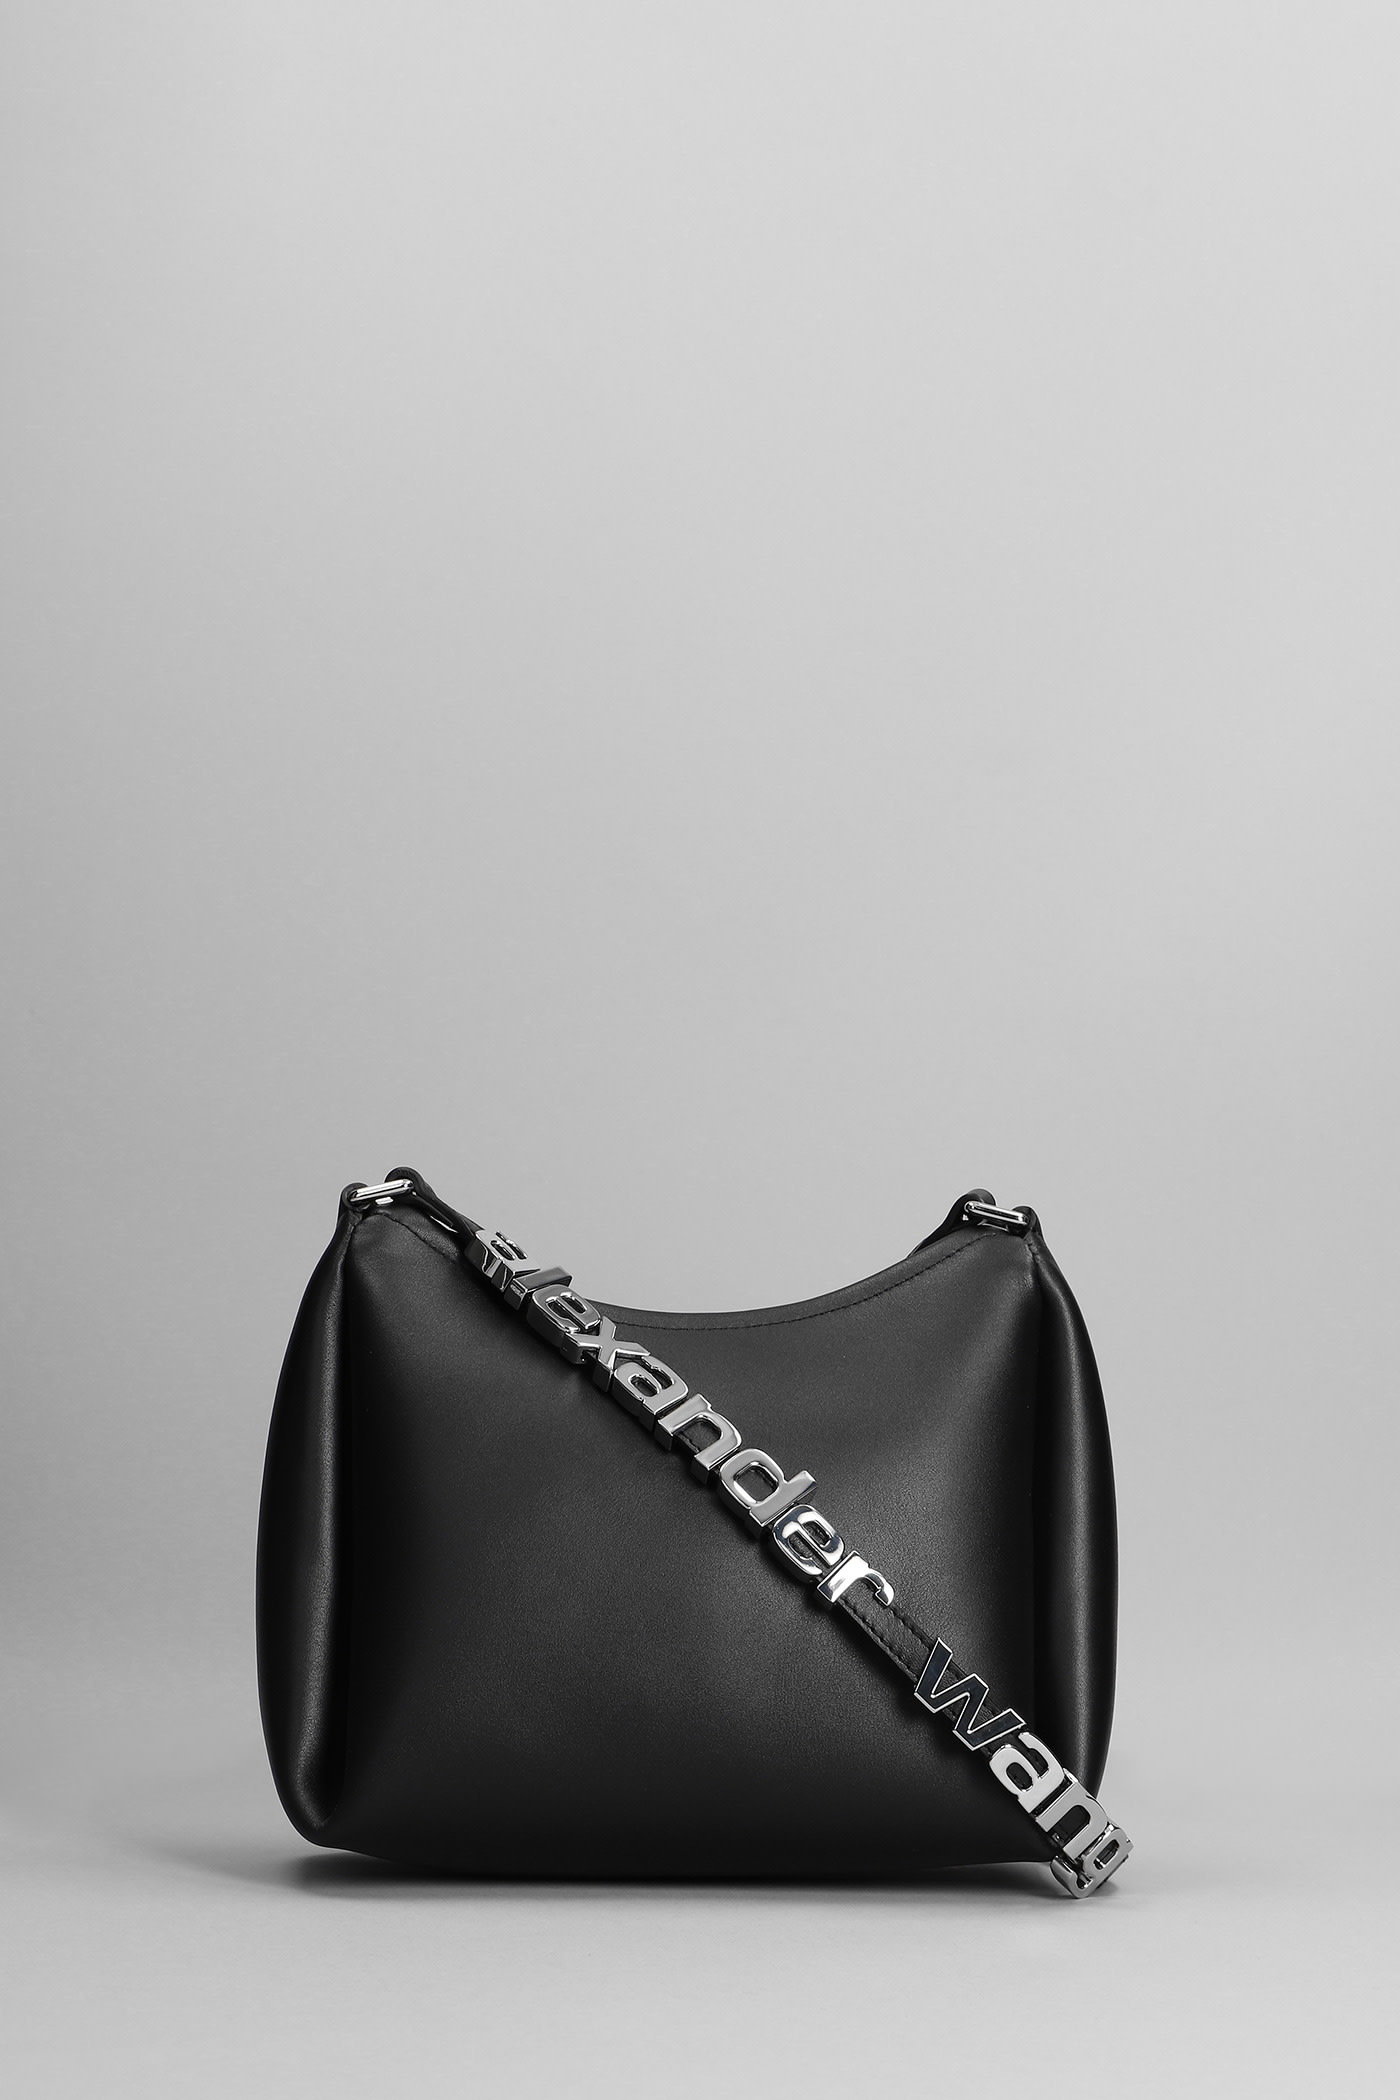 Alexander Wang Shoulder Bag In Black Leather